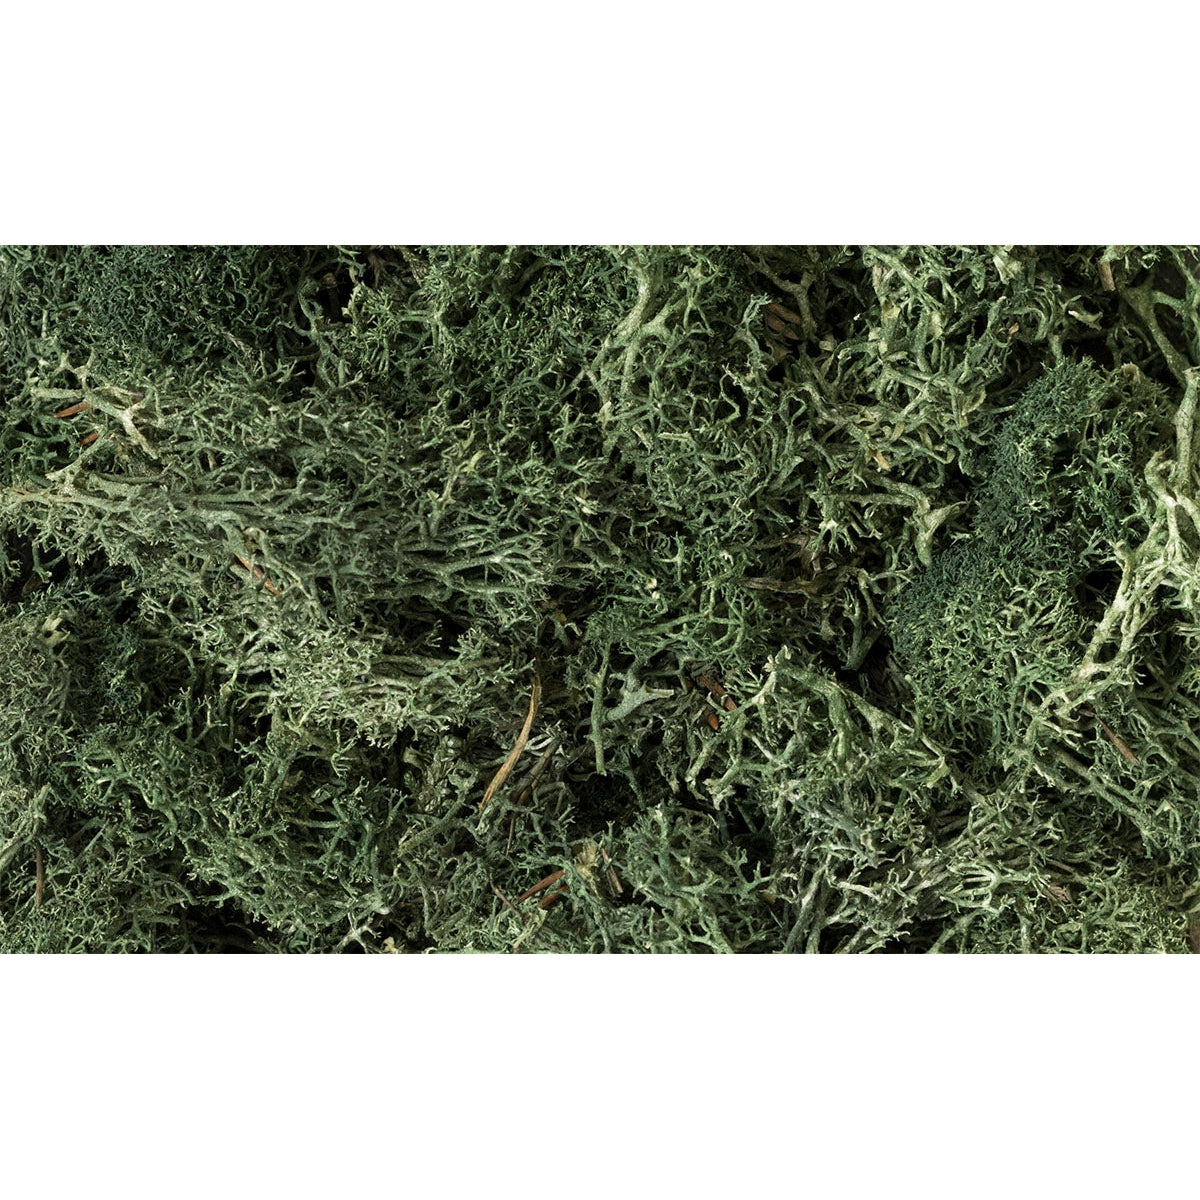 Woodland Scenics Lichen/Dark Green